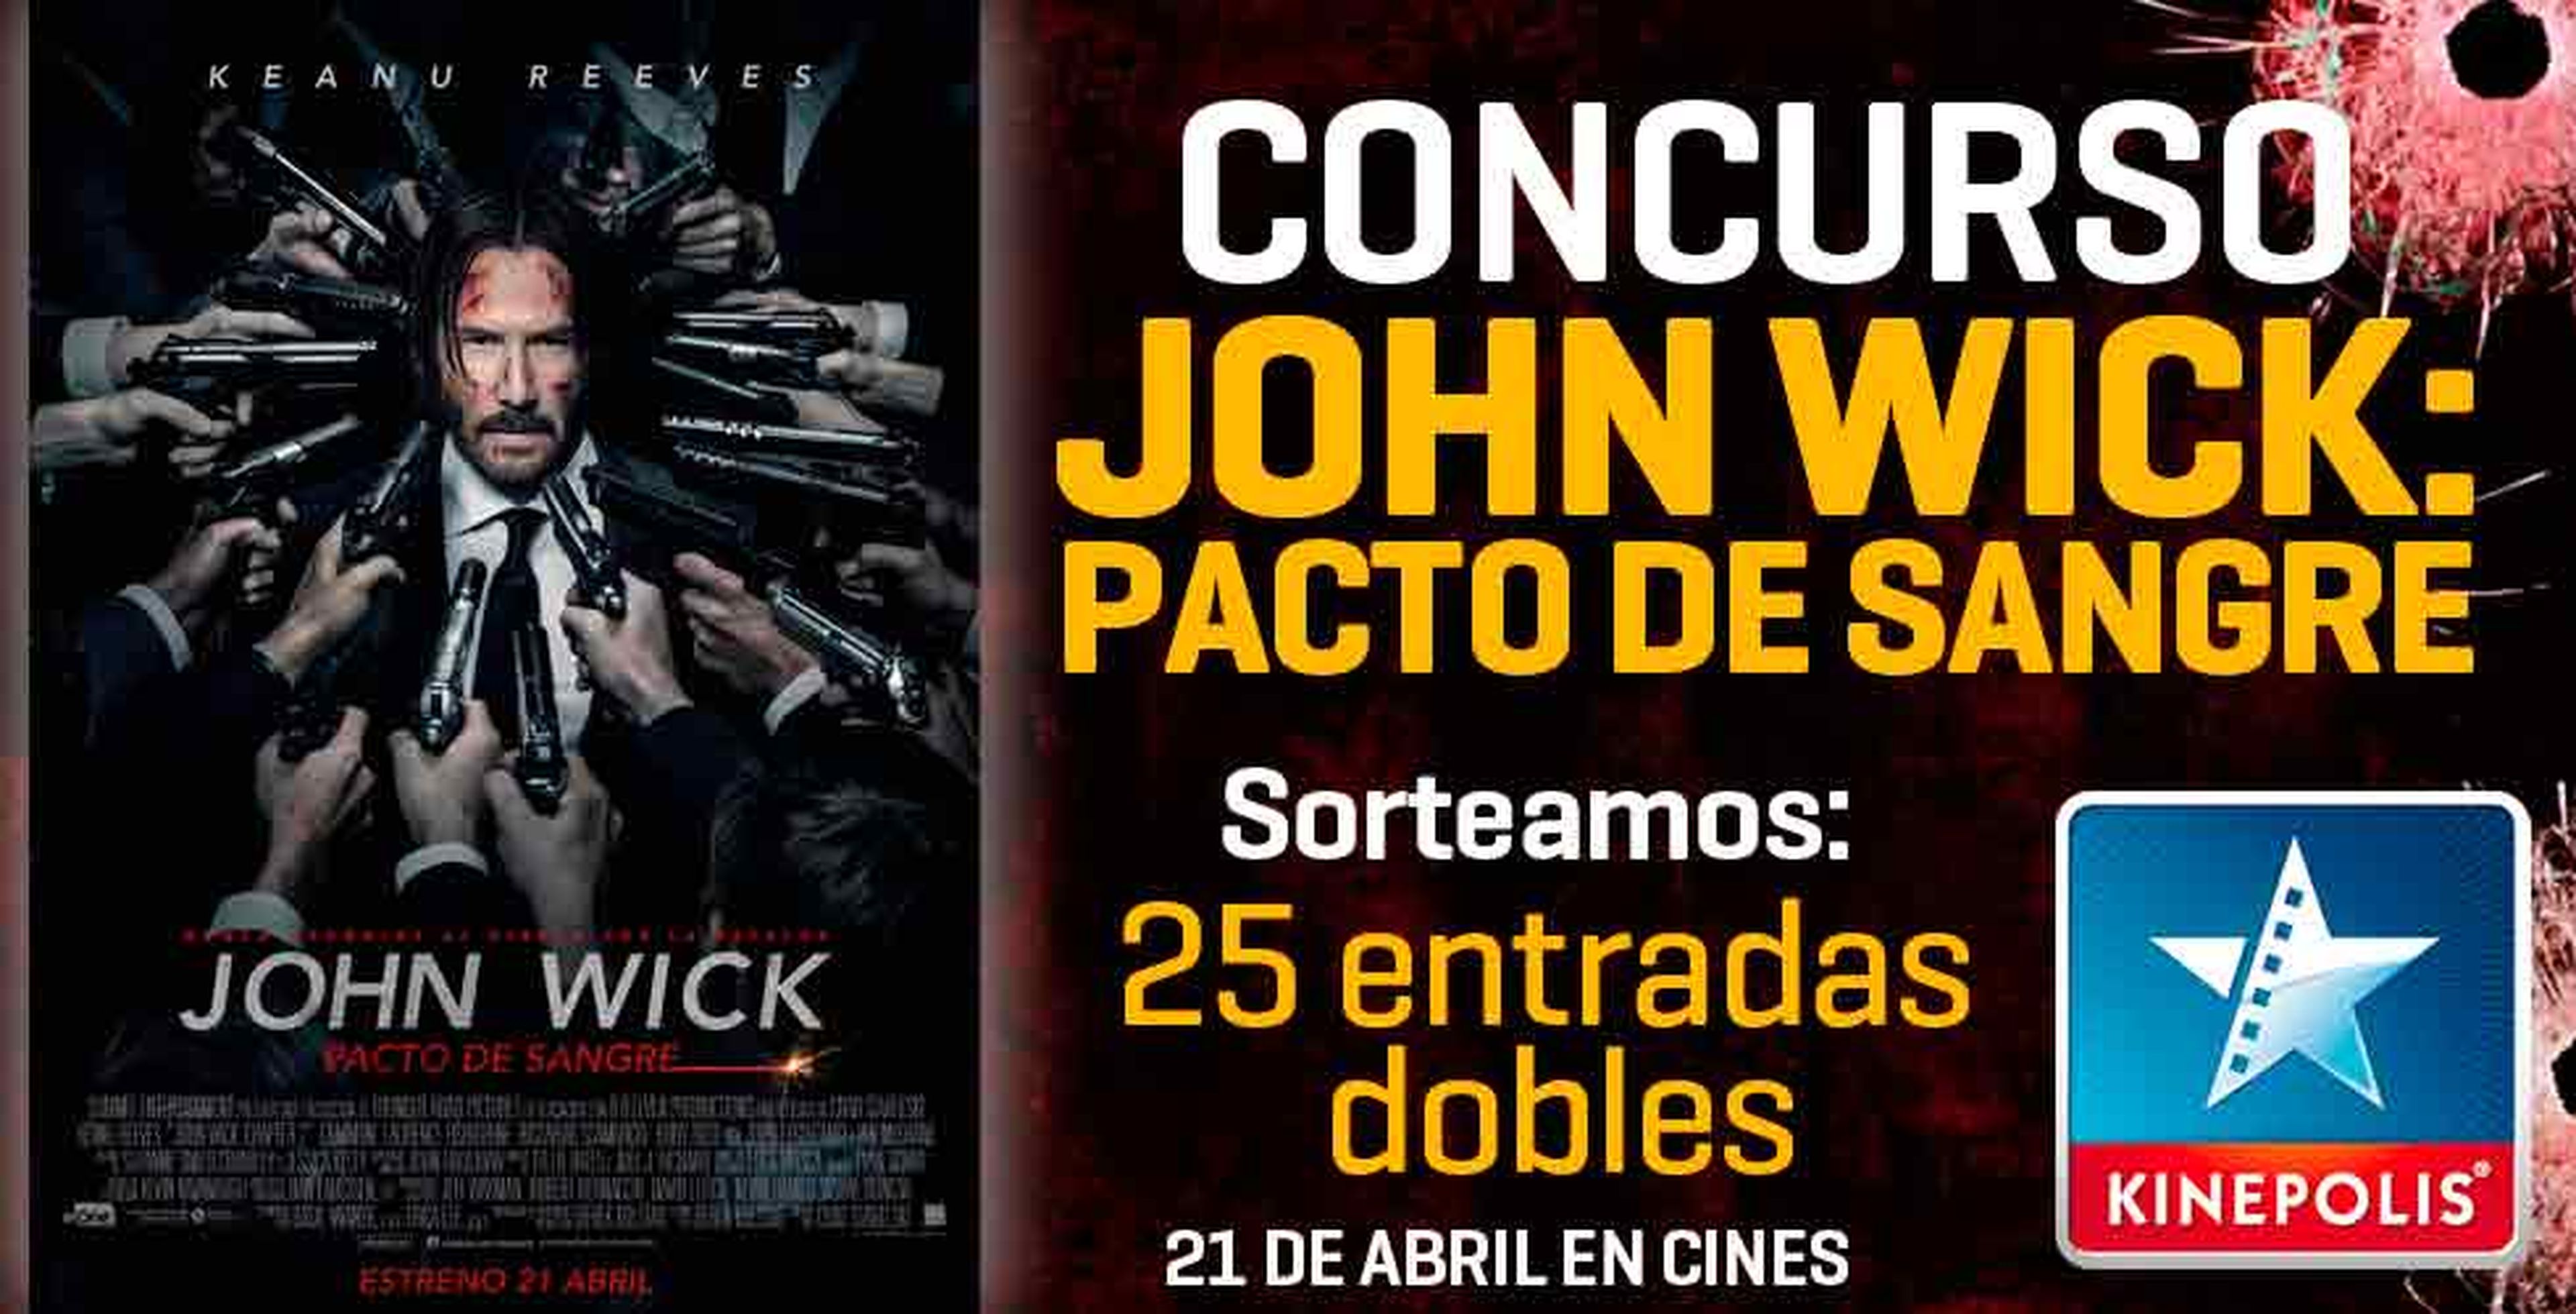 Concurso John Wick